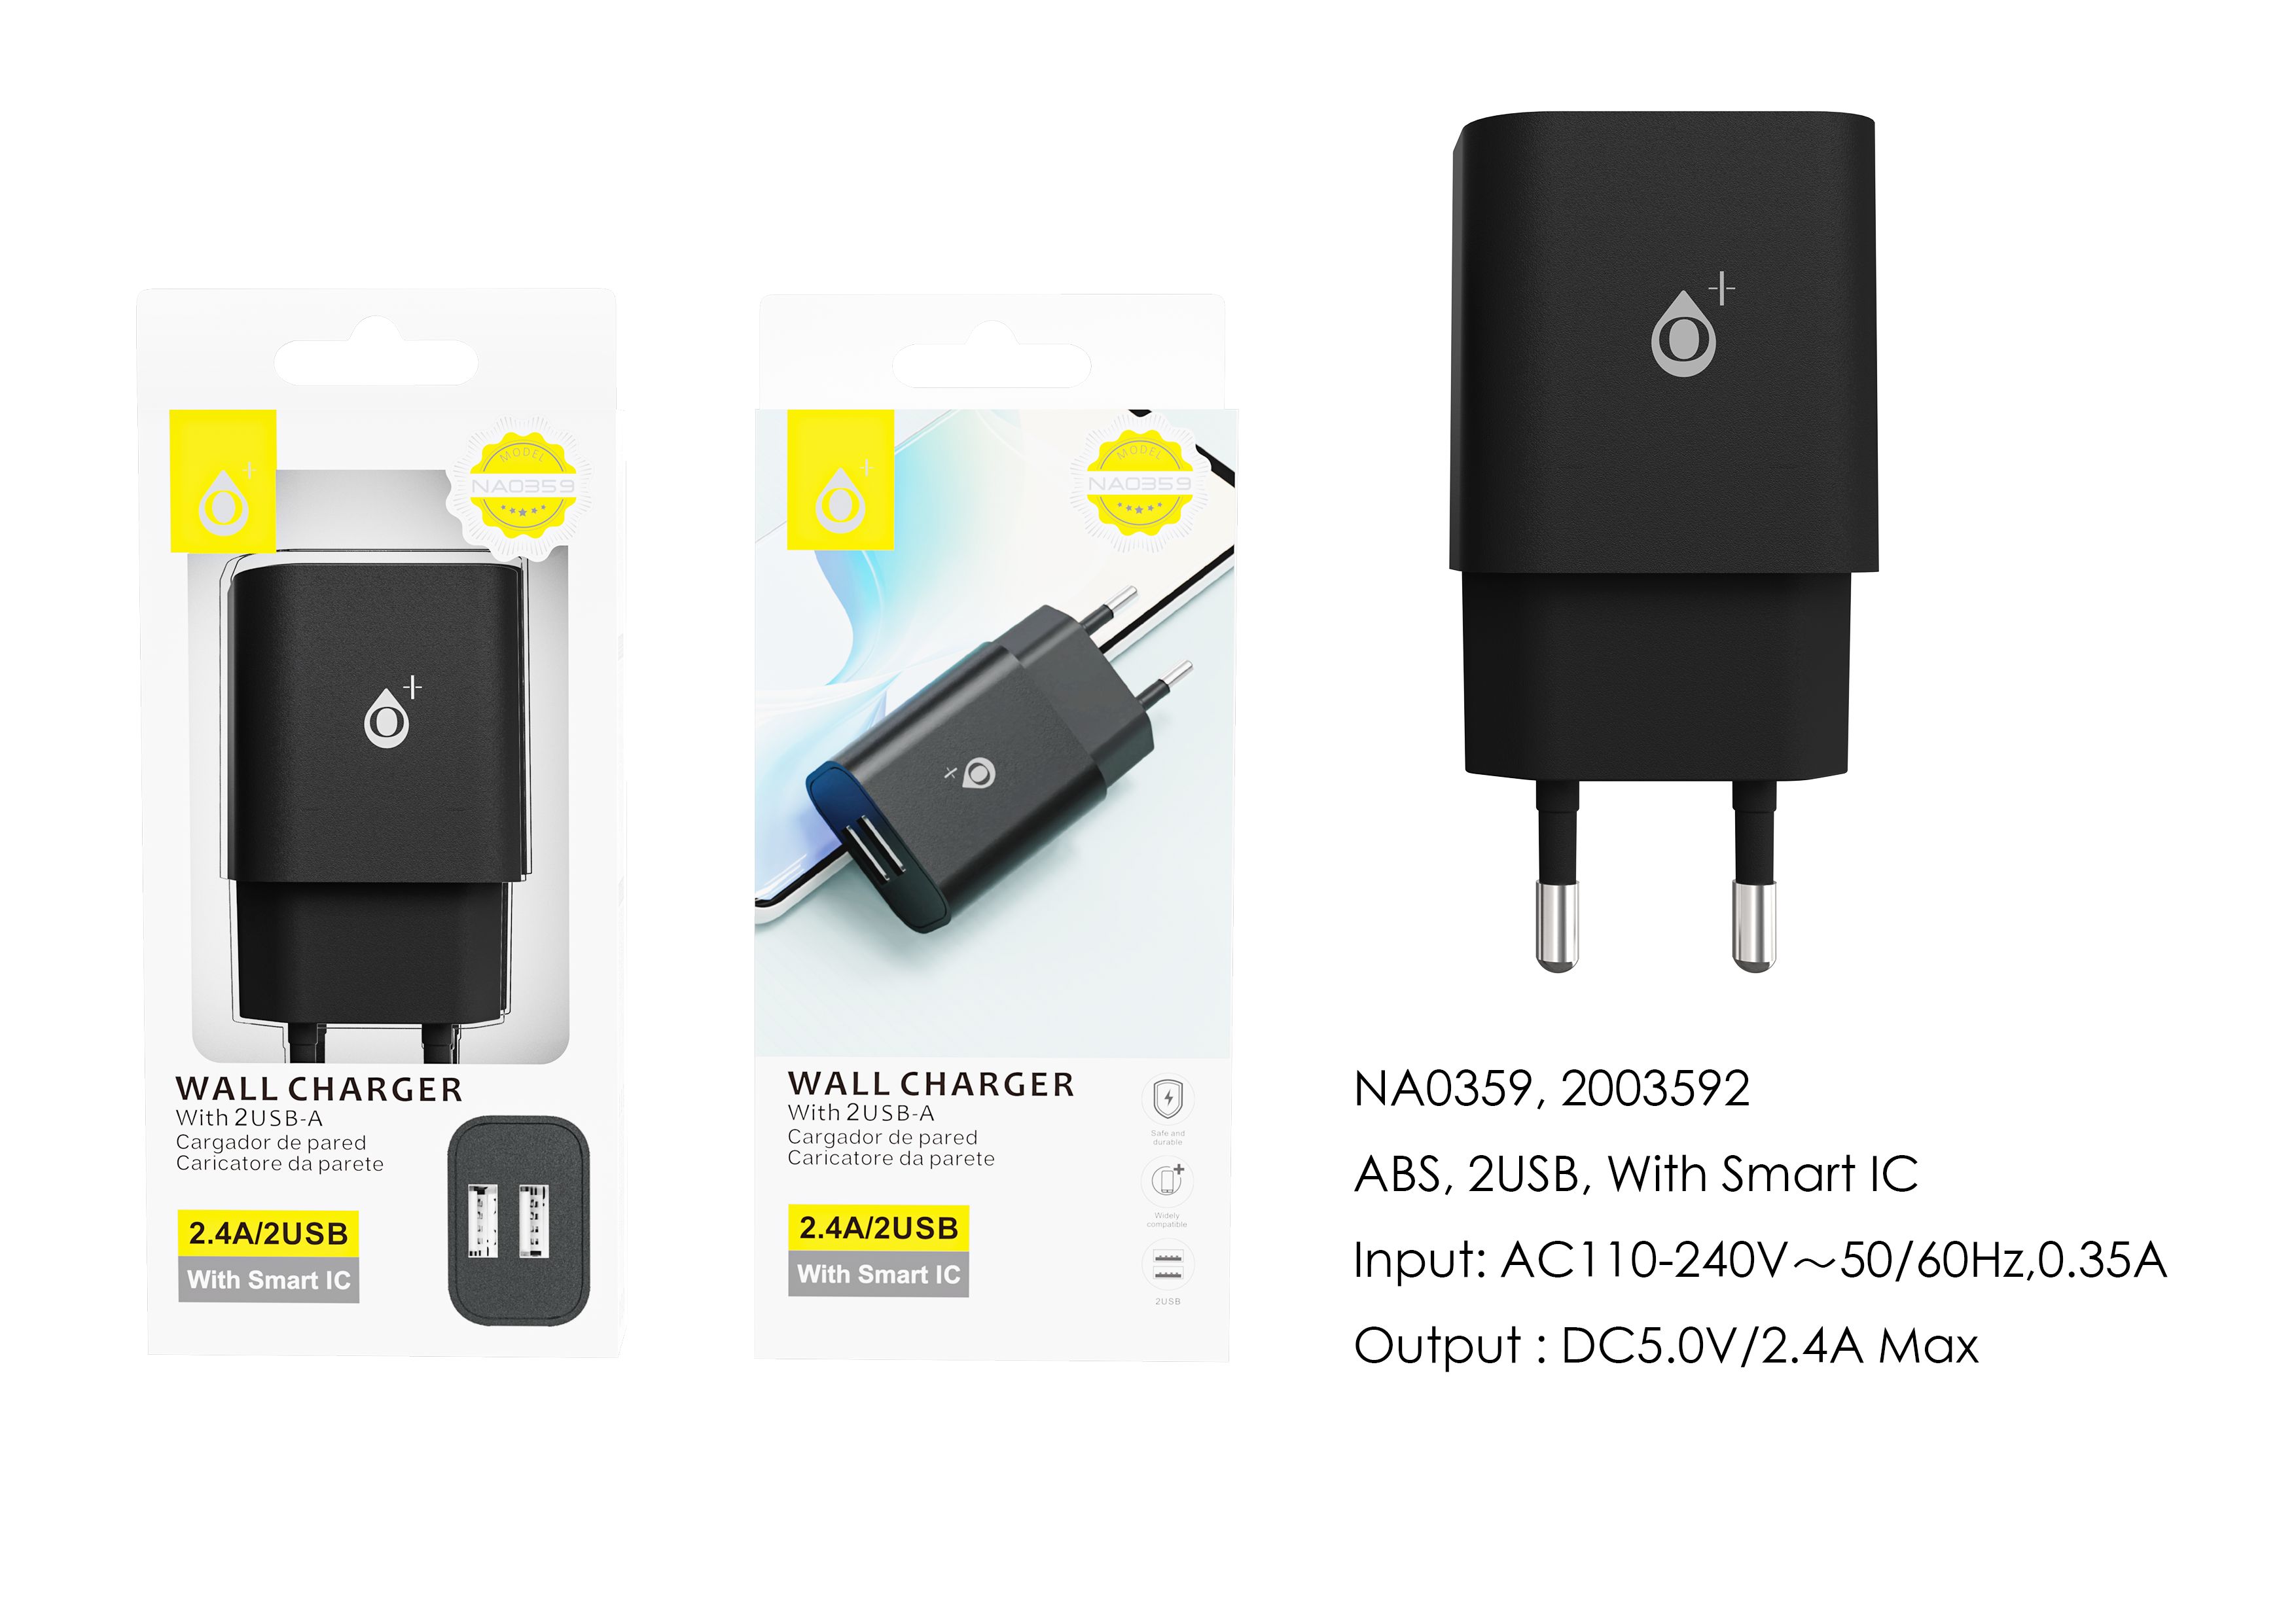 NA0359 NE Cargador de Red ELIO  Con Chip de Reconocimiento Inteligente, 2 USB sin cable, 5V/2.4A Max